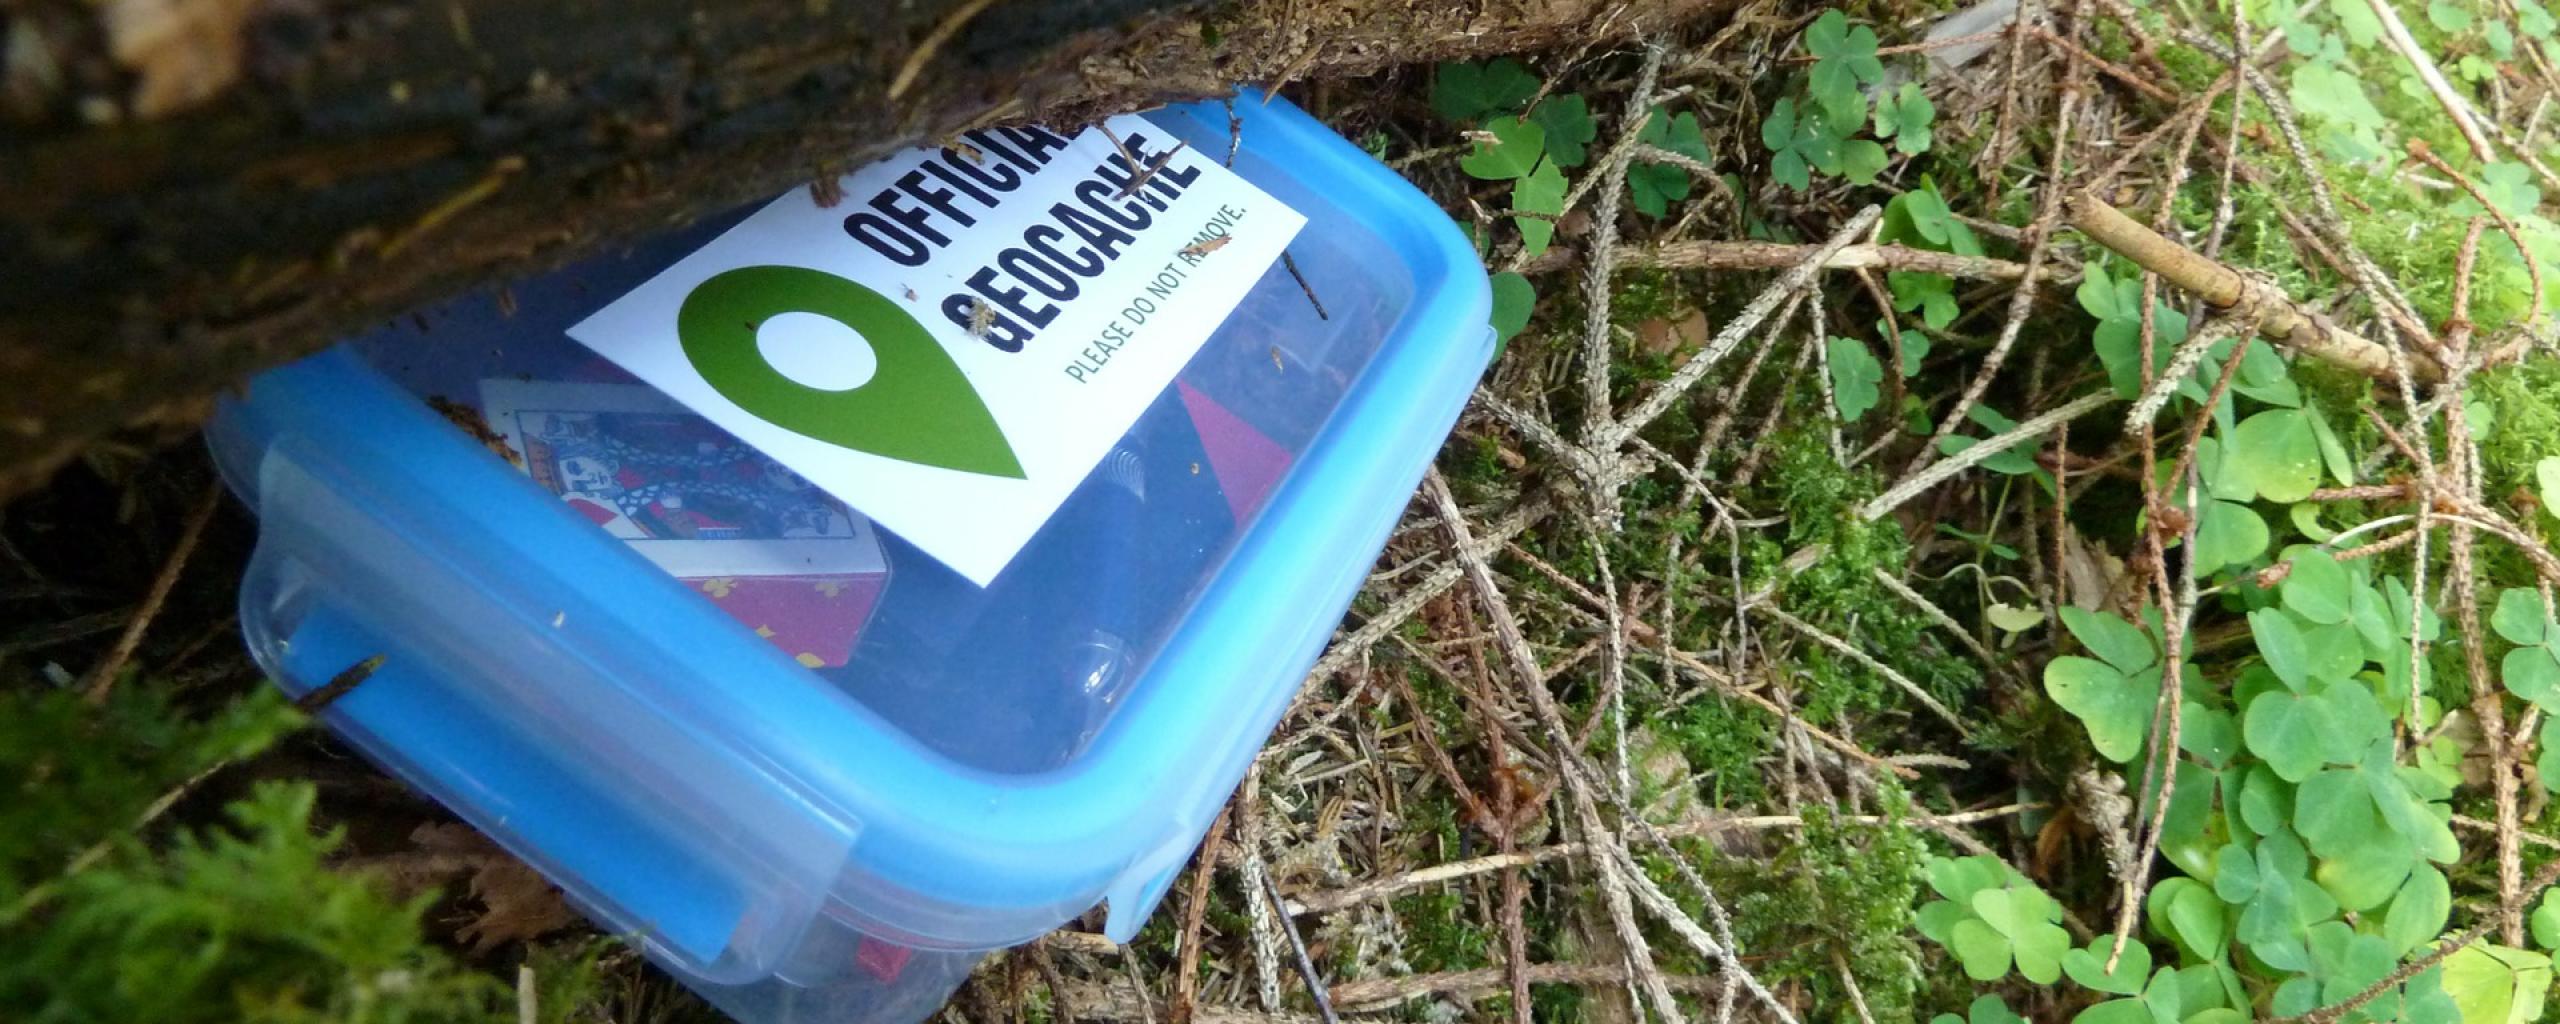 Een plastic doosje met daarop een sticker met de tekst 'Official Geocache'. Het doosje ligt deels verstopt onder een boomstam en rondom het doosje zien we klavertjes en takken.